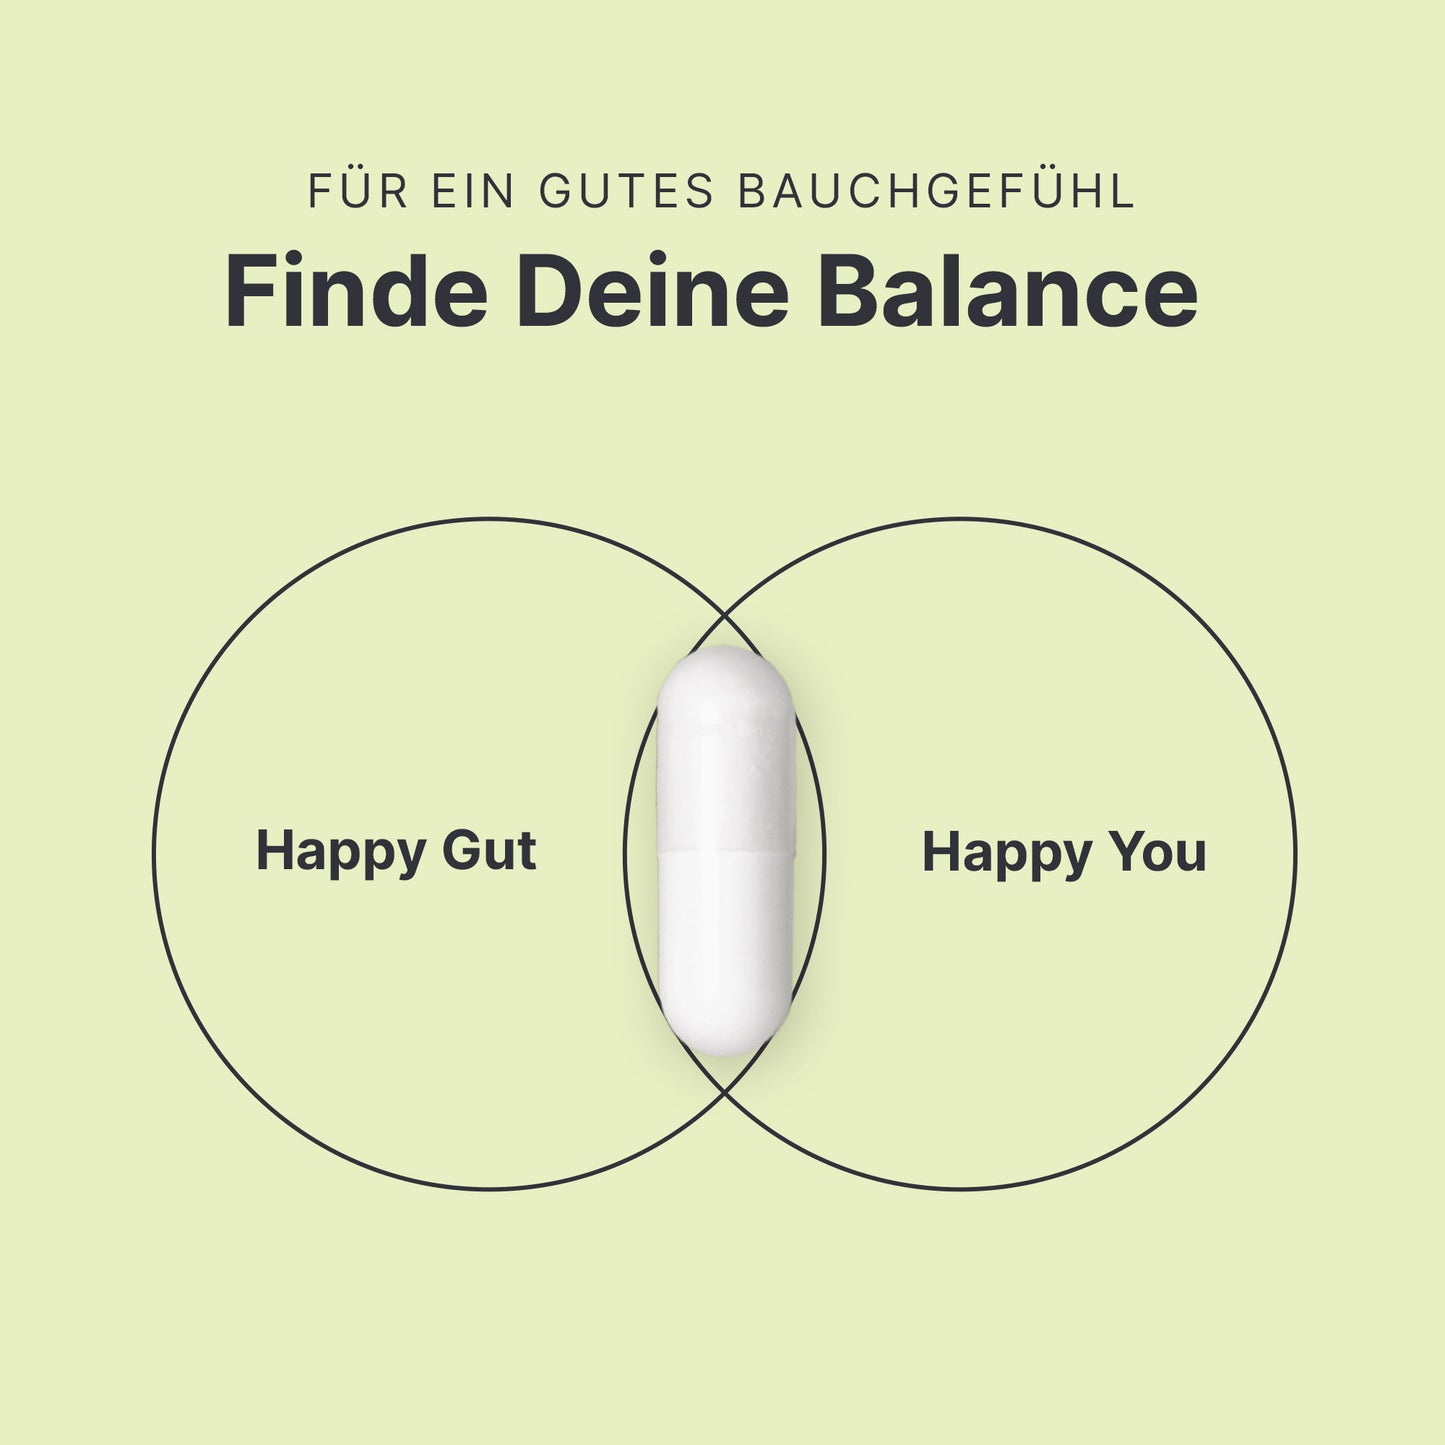 Finde Deine Balance